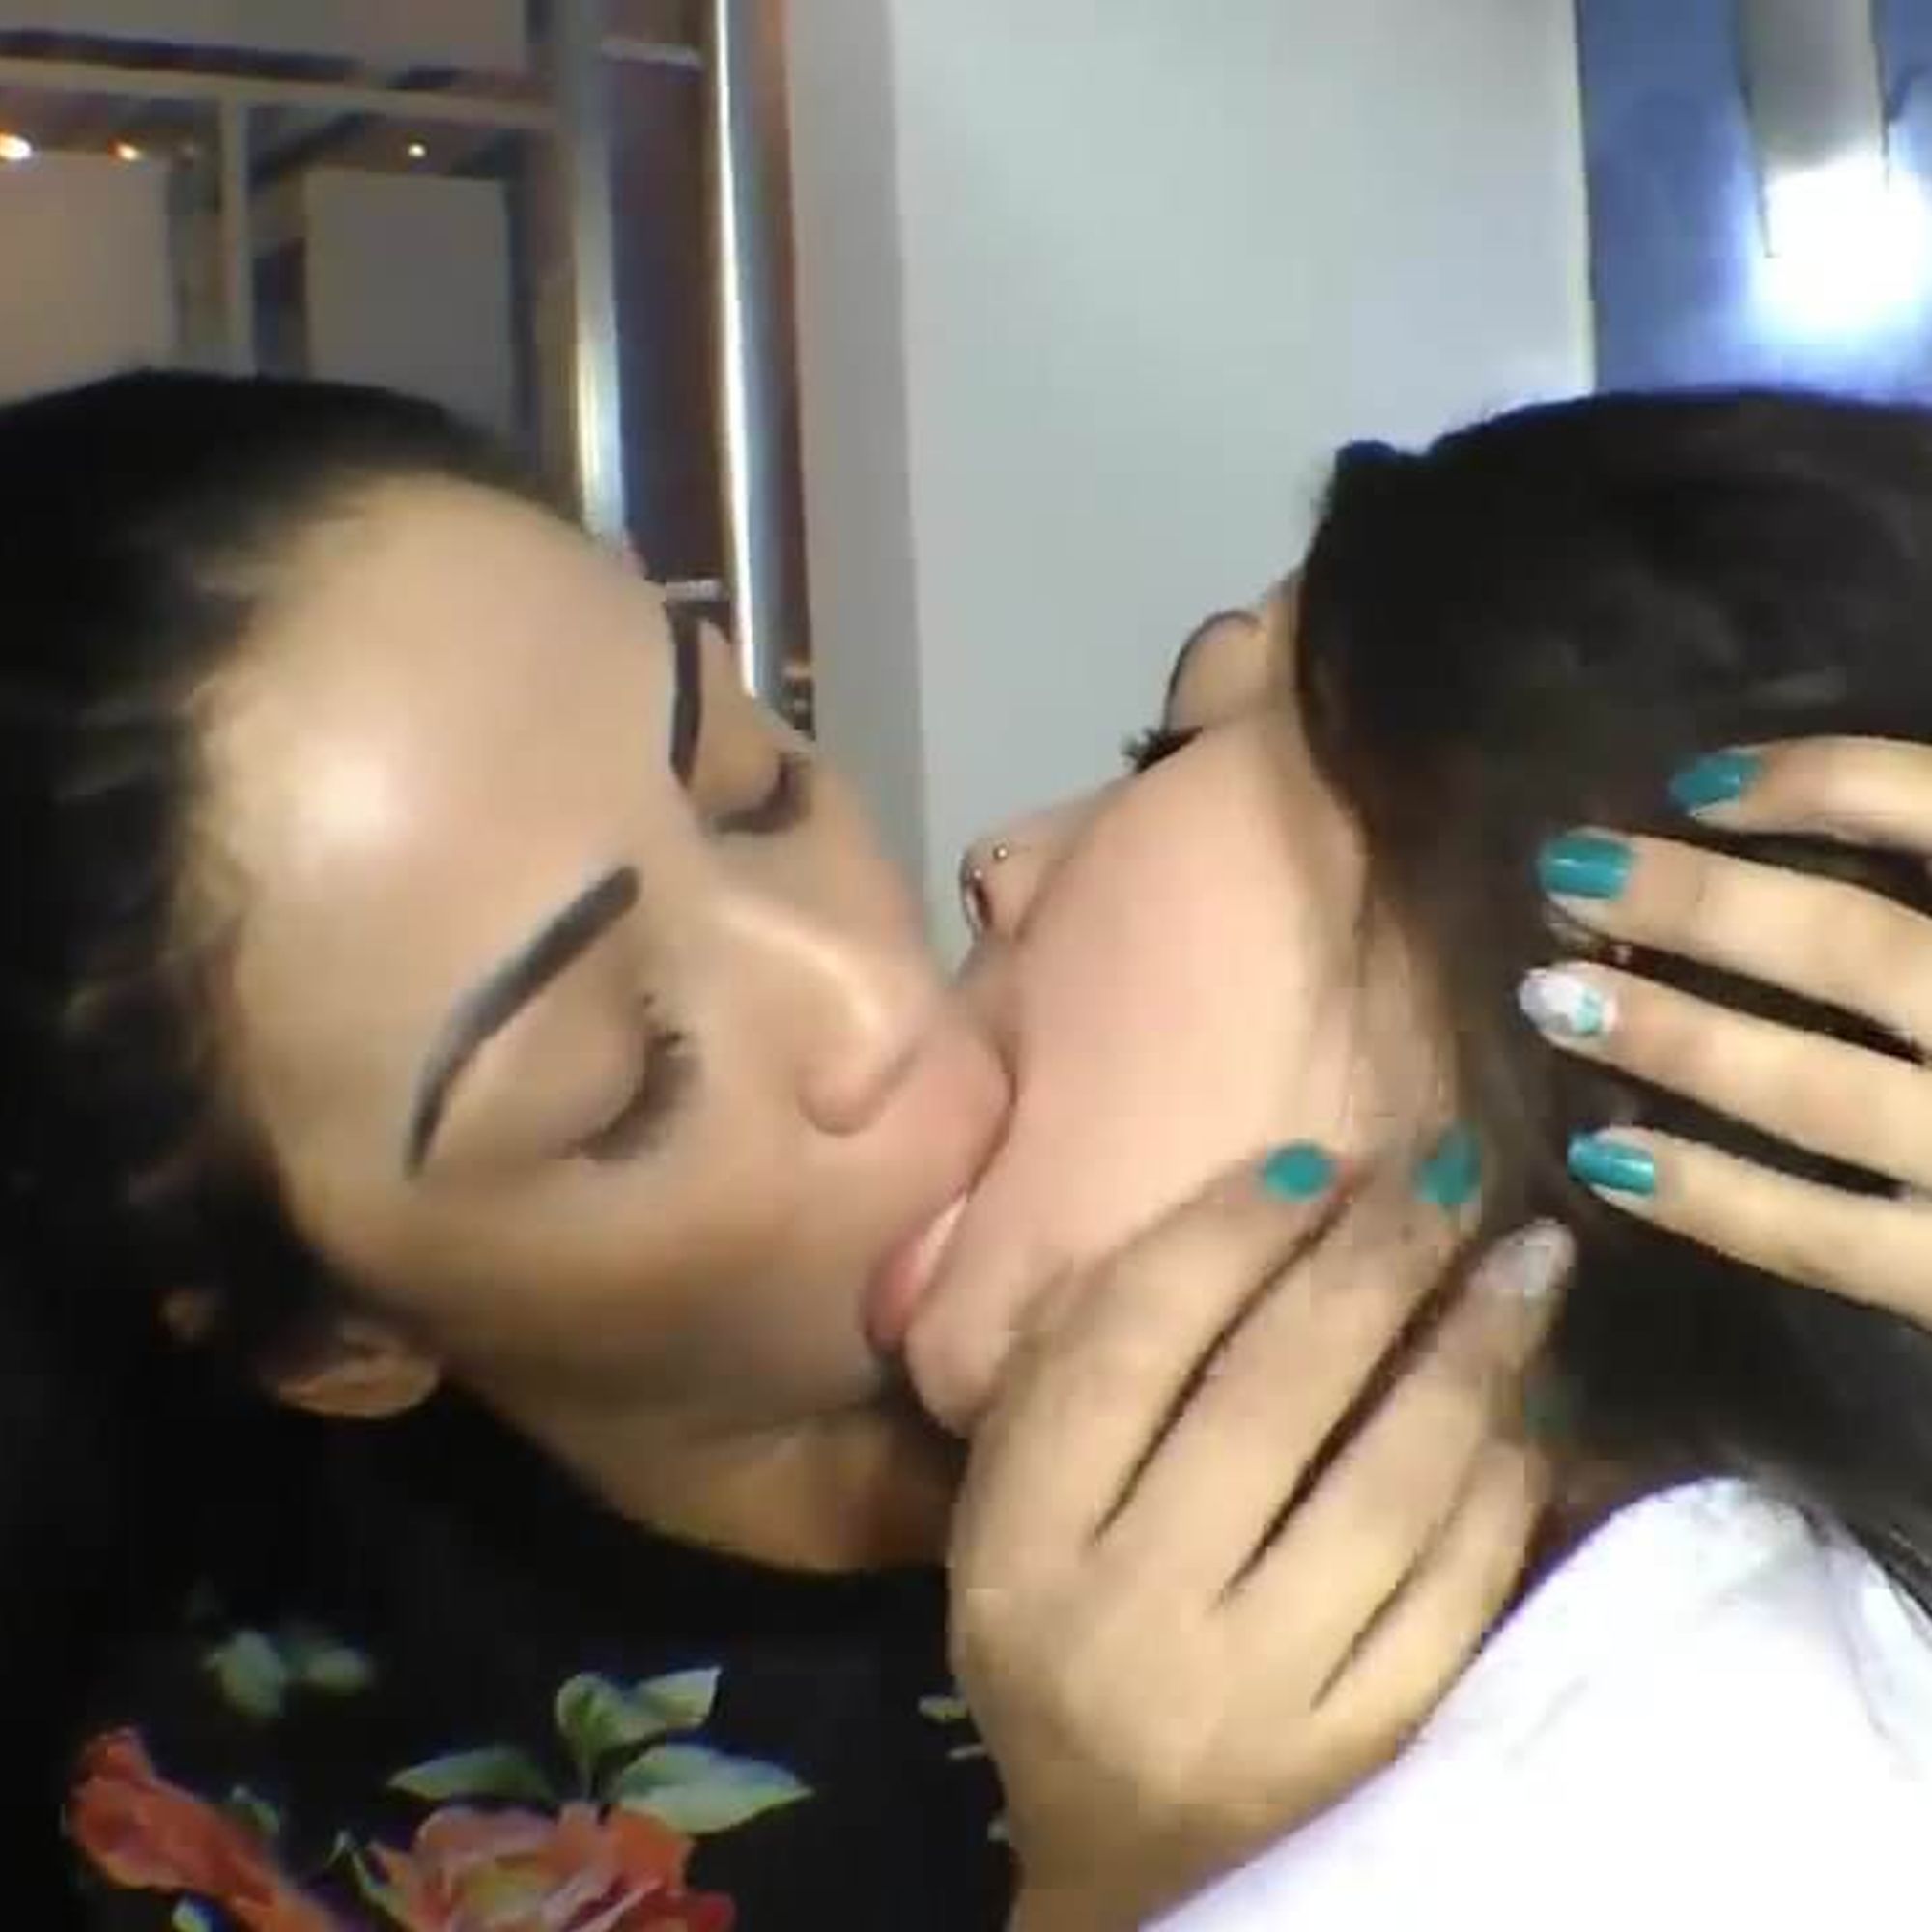 лесби целуются в перископе фото 103